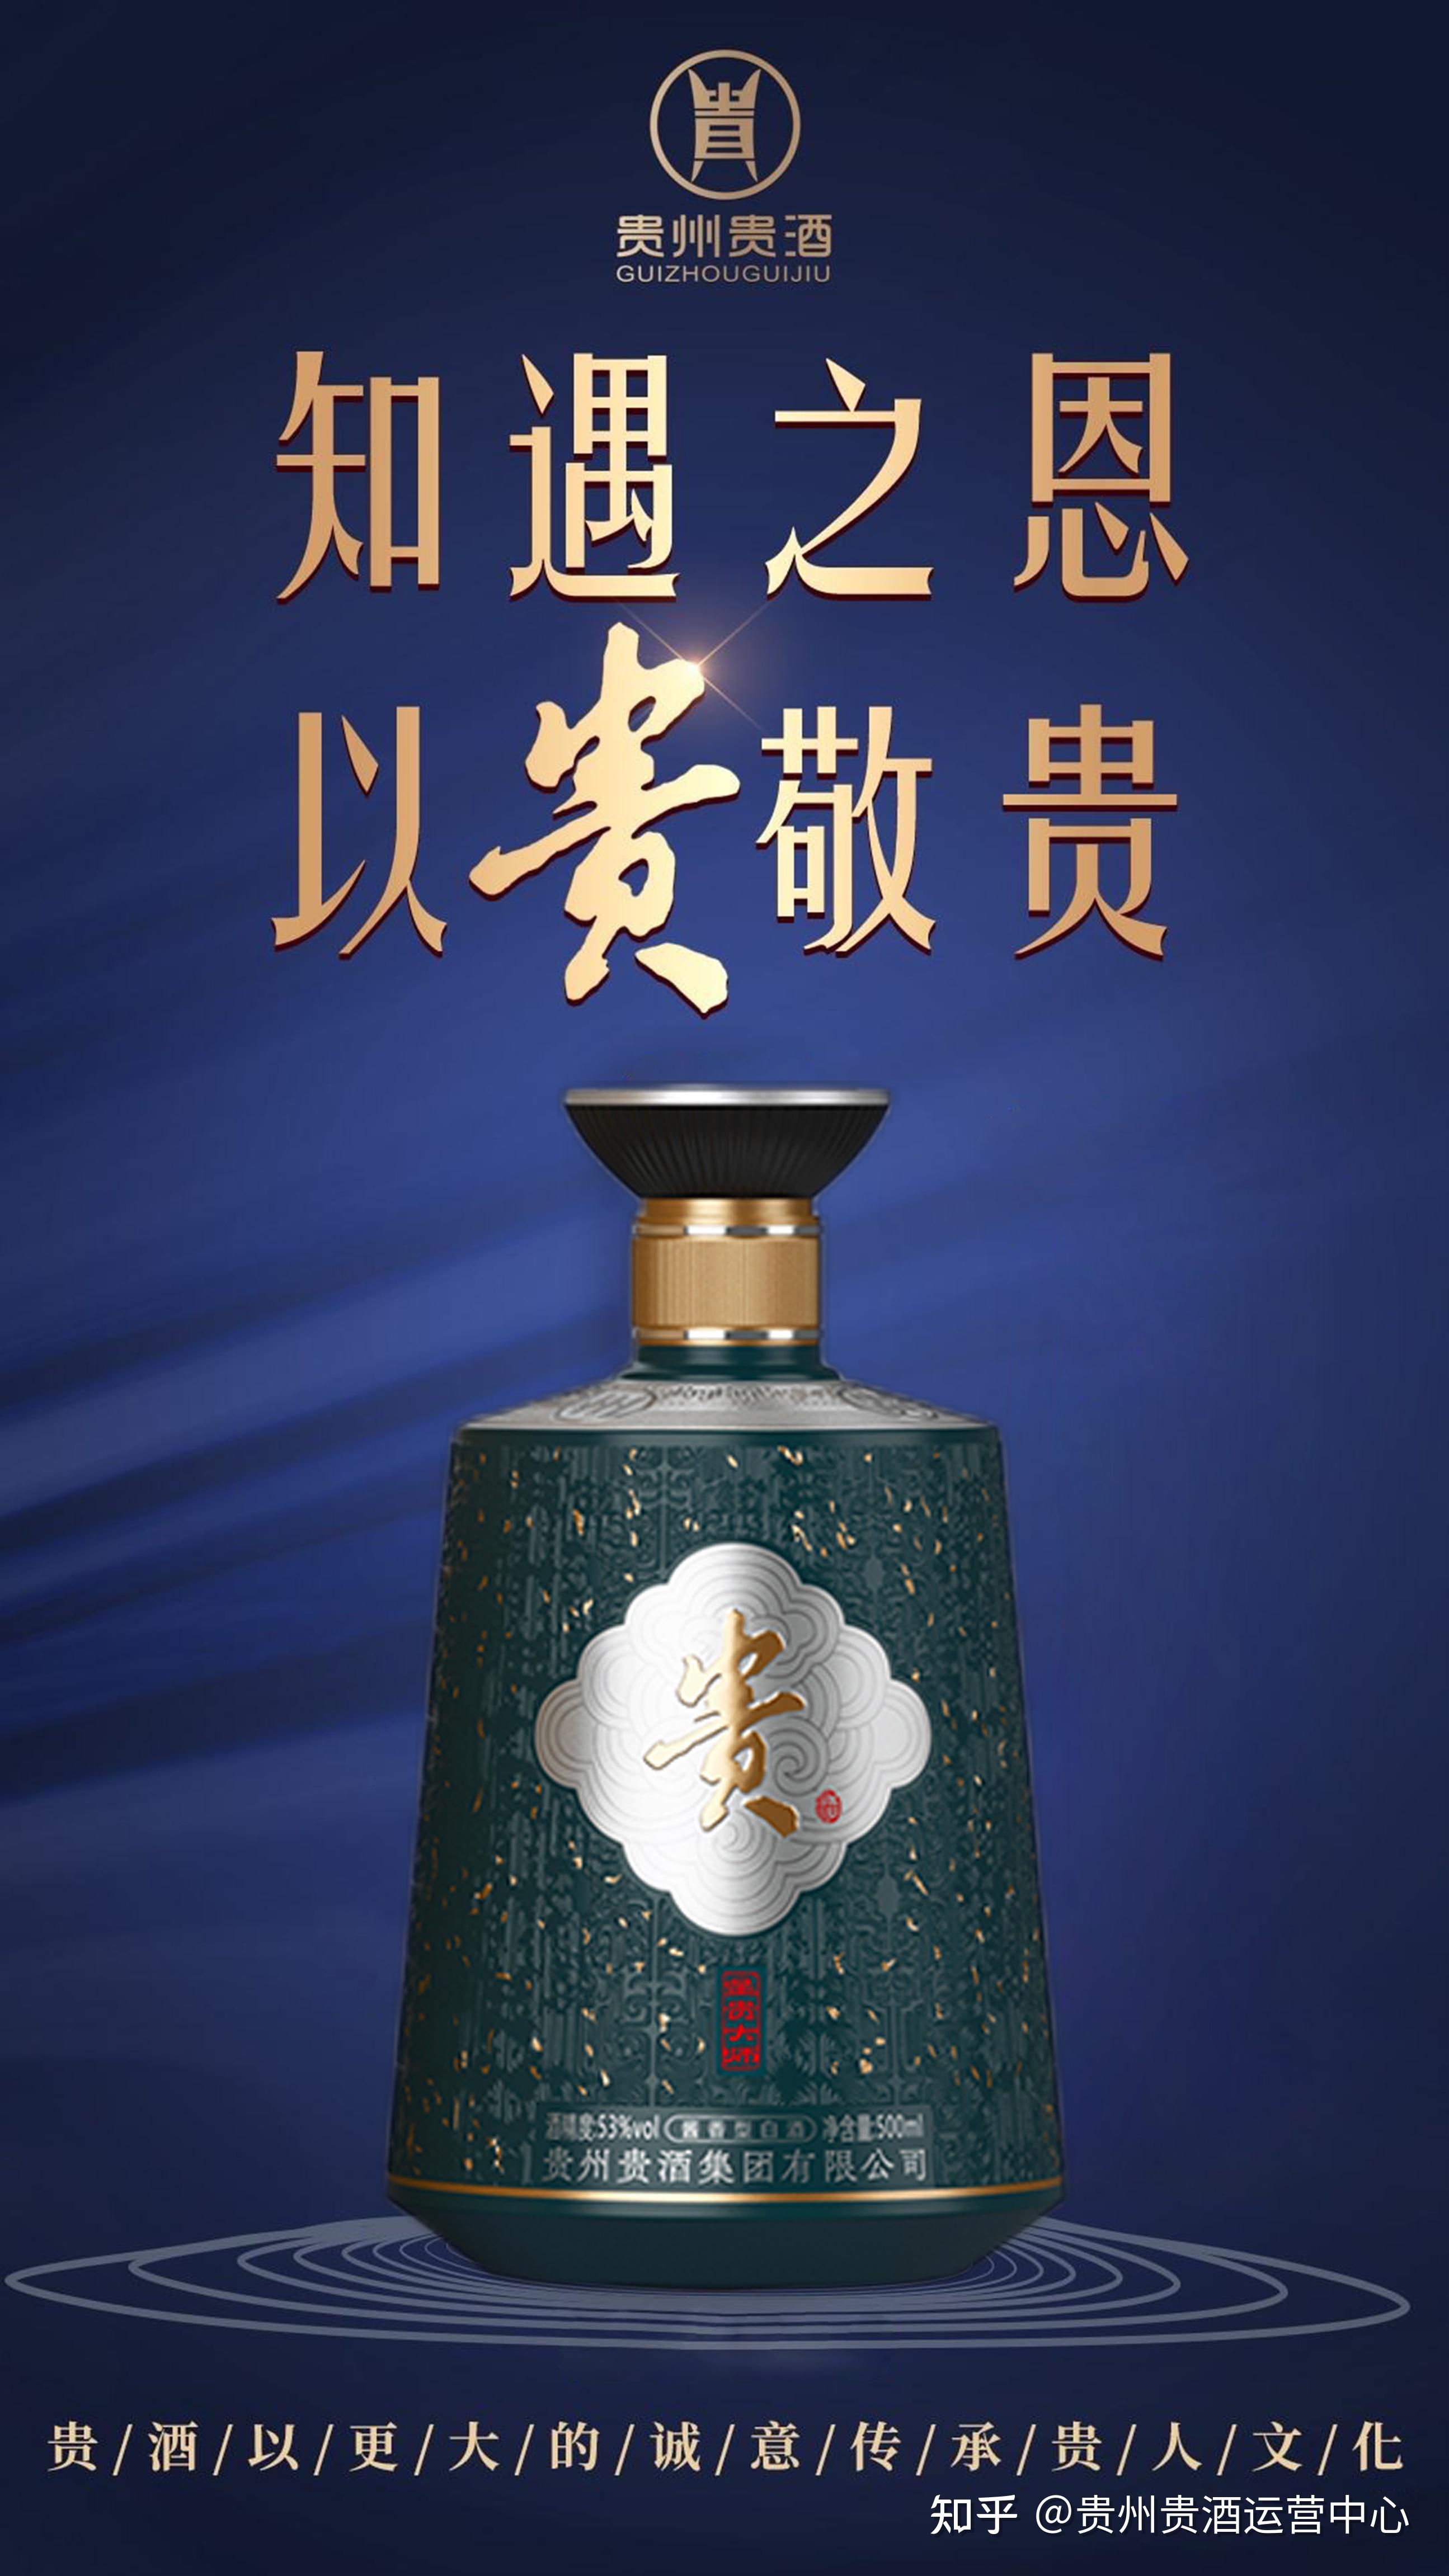 贵州贵酒广告图片